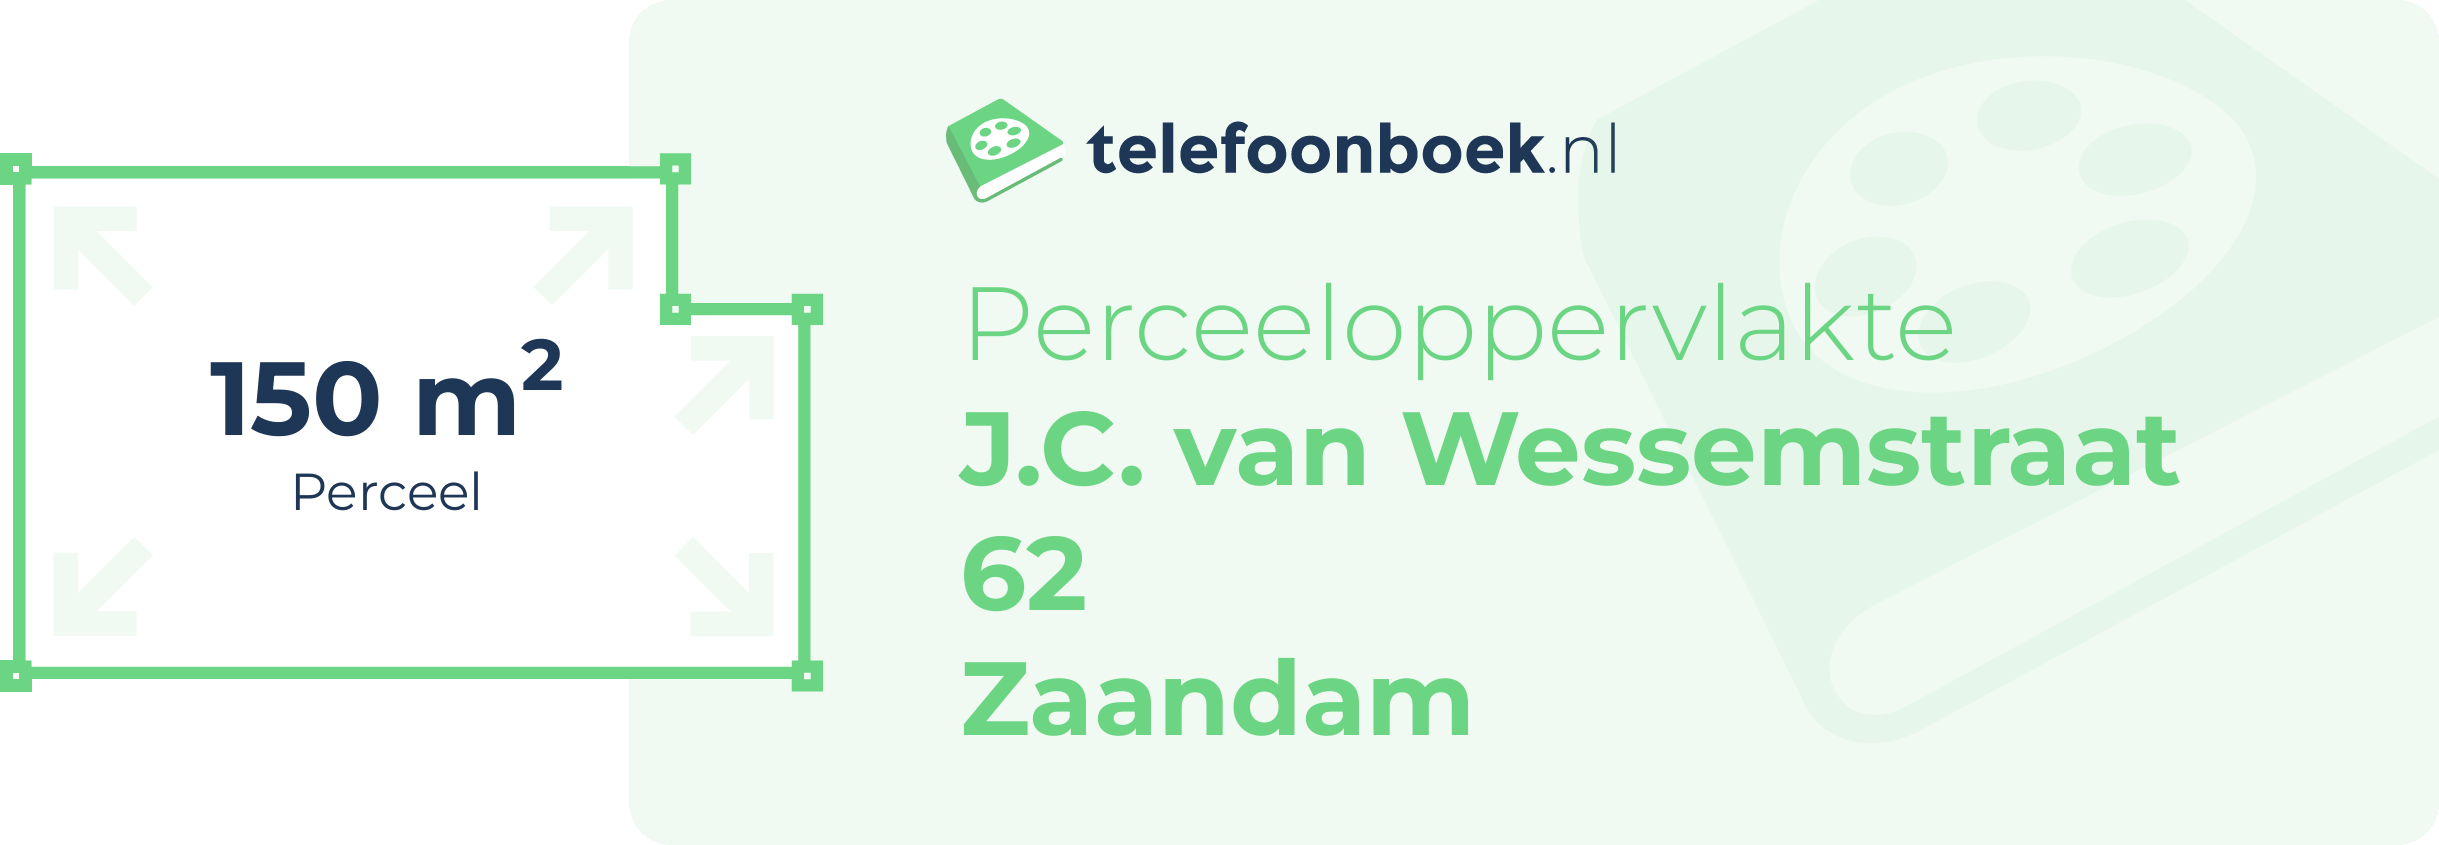 Perceeloppervlakte J.C. Van Wessemstraat 62 Zaandam